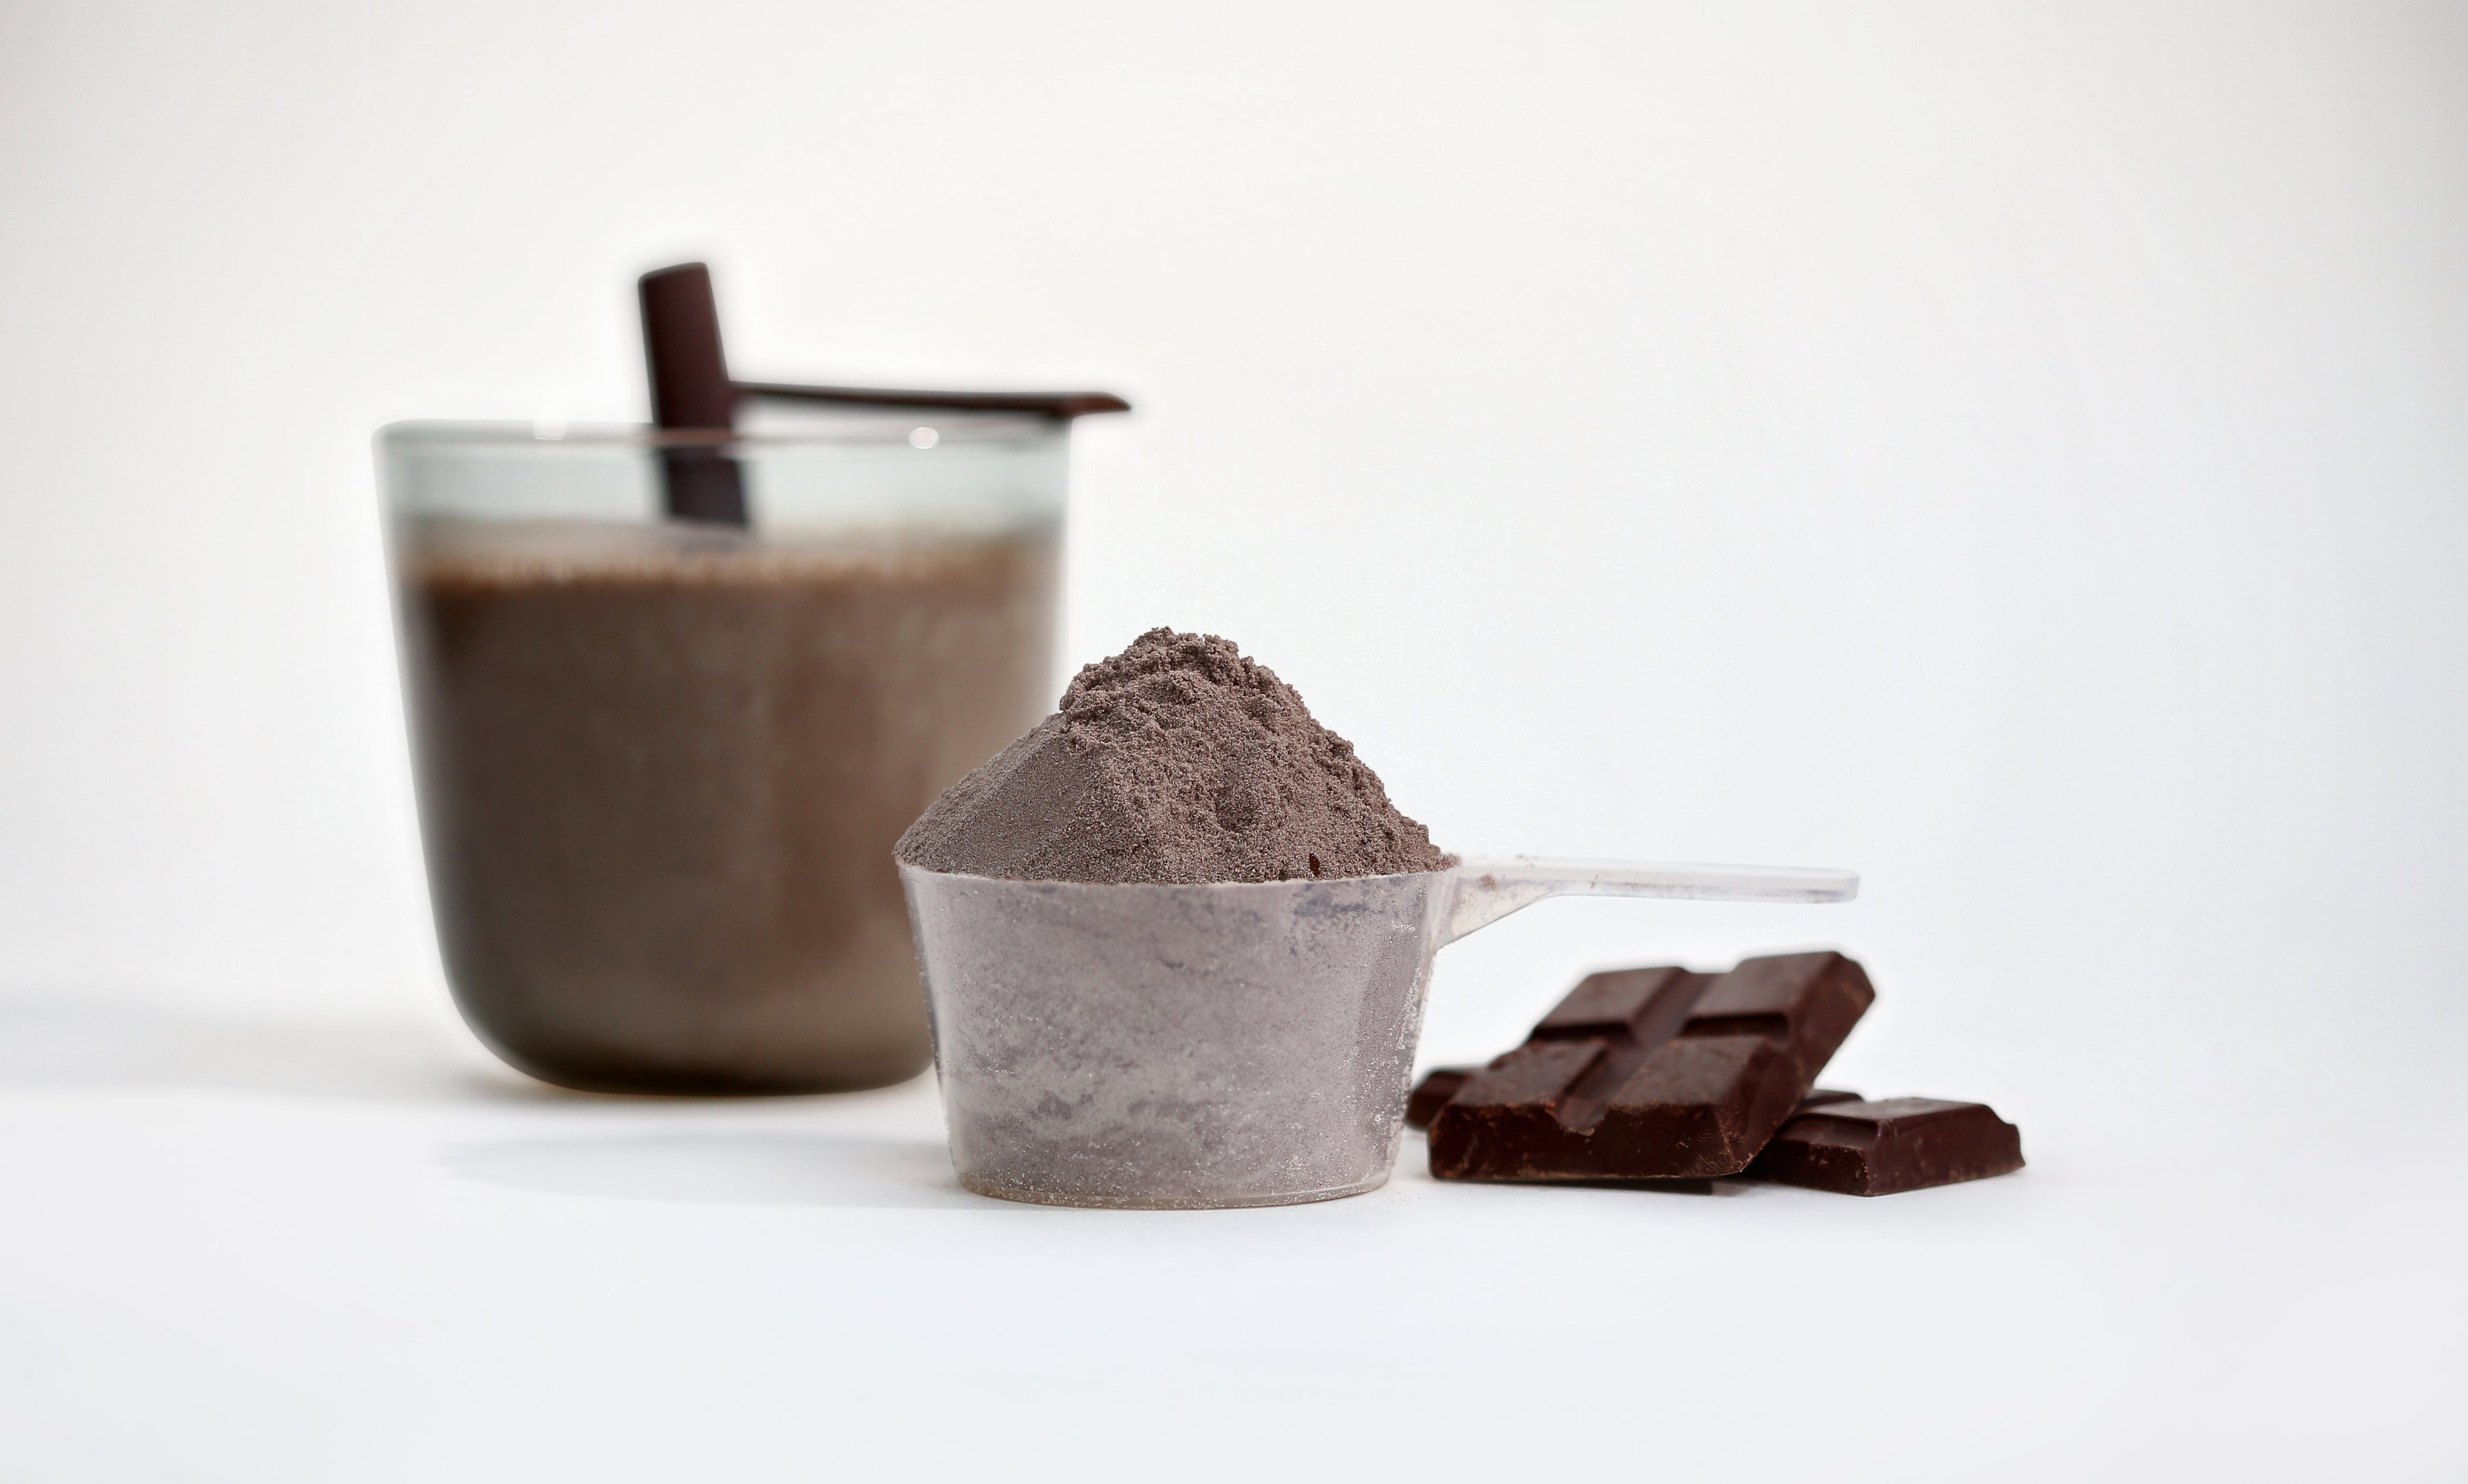 Concentrés de Protéines de Lactosérum - Chocolat Intense Gourmet | 1kg